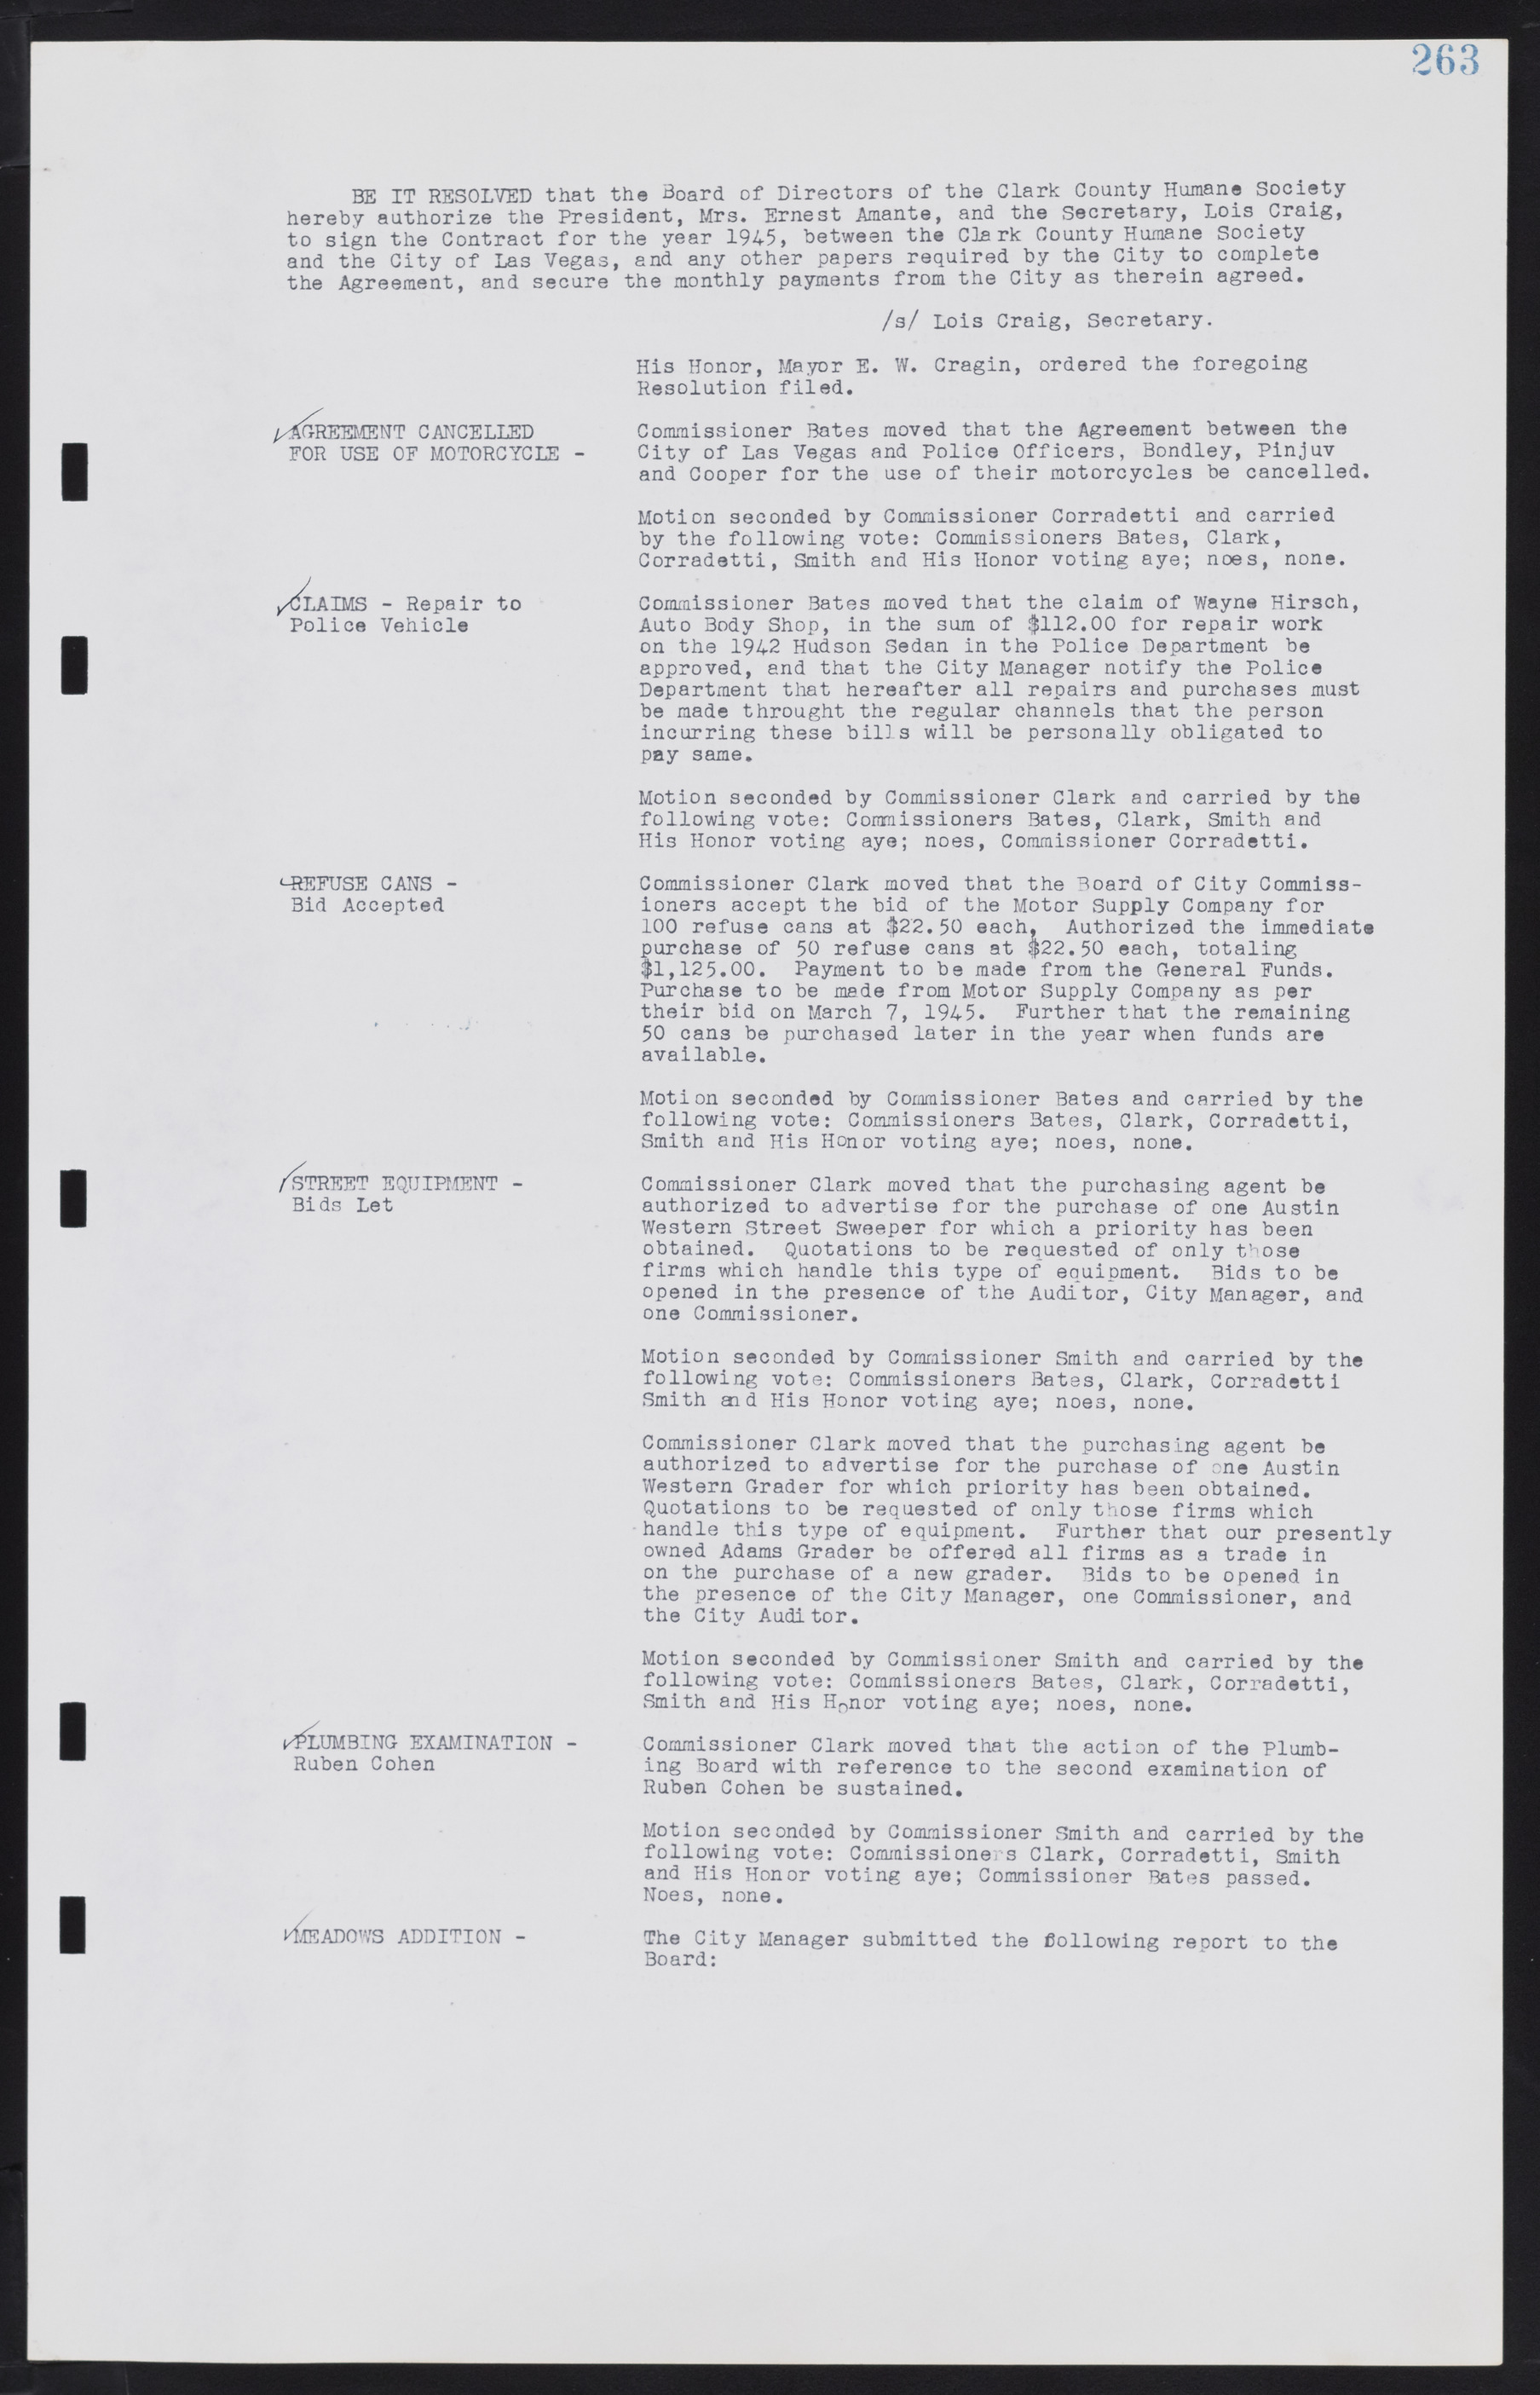 Las Vegas City Commission Minutes, August 11, 1942 to December 30, 1946, lvc000005-285